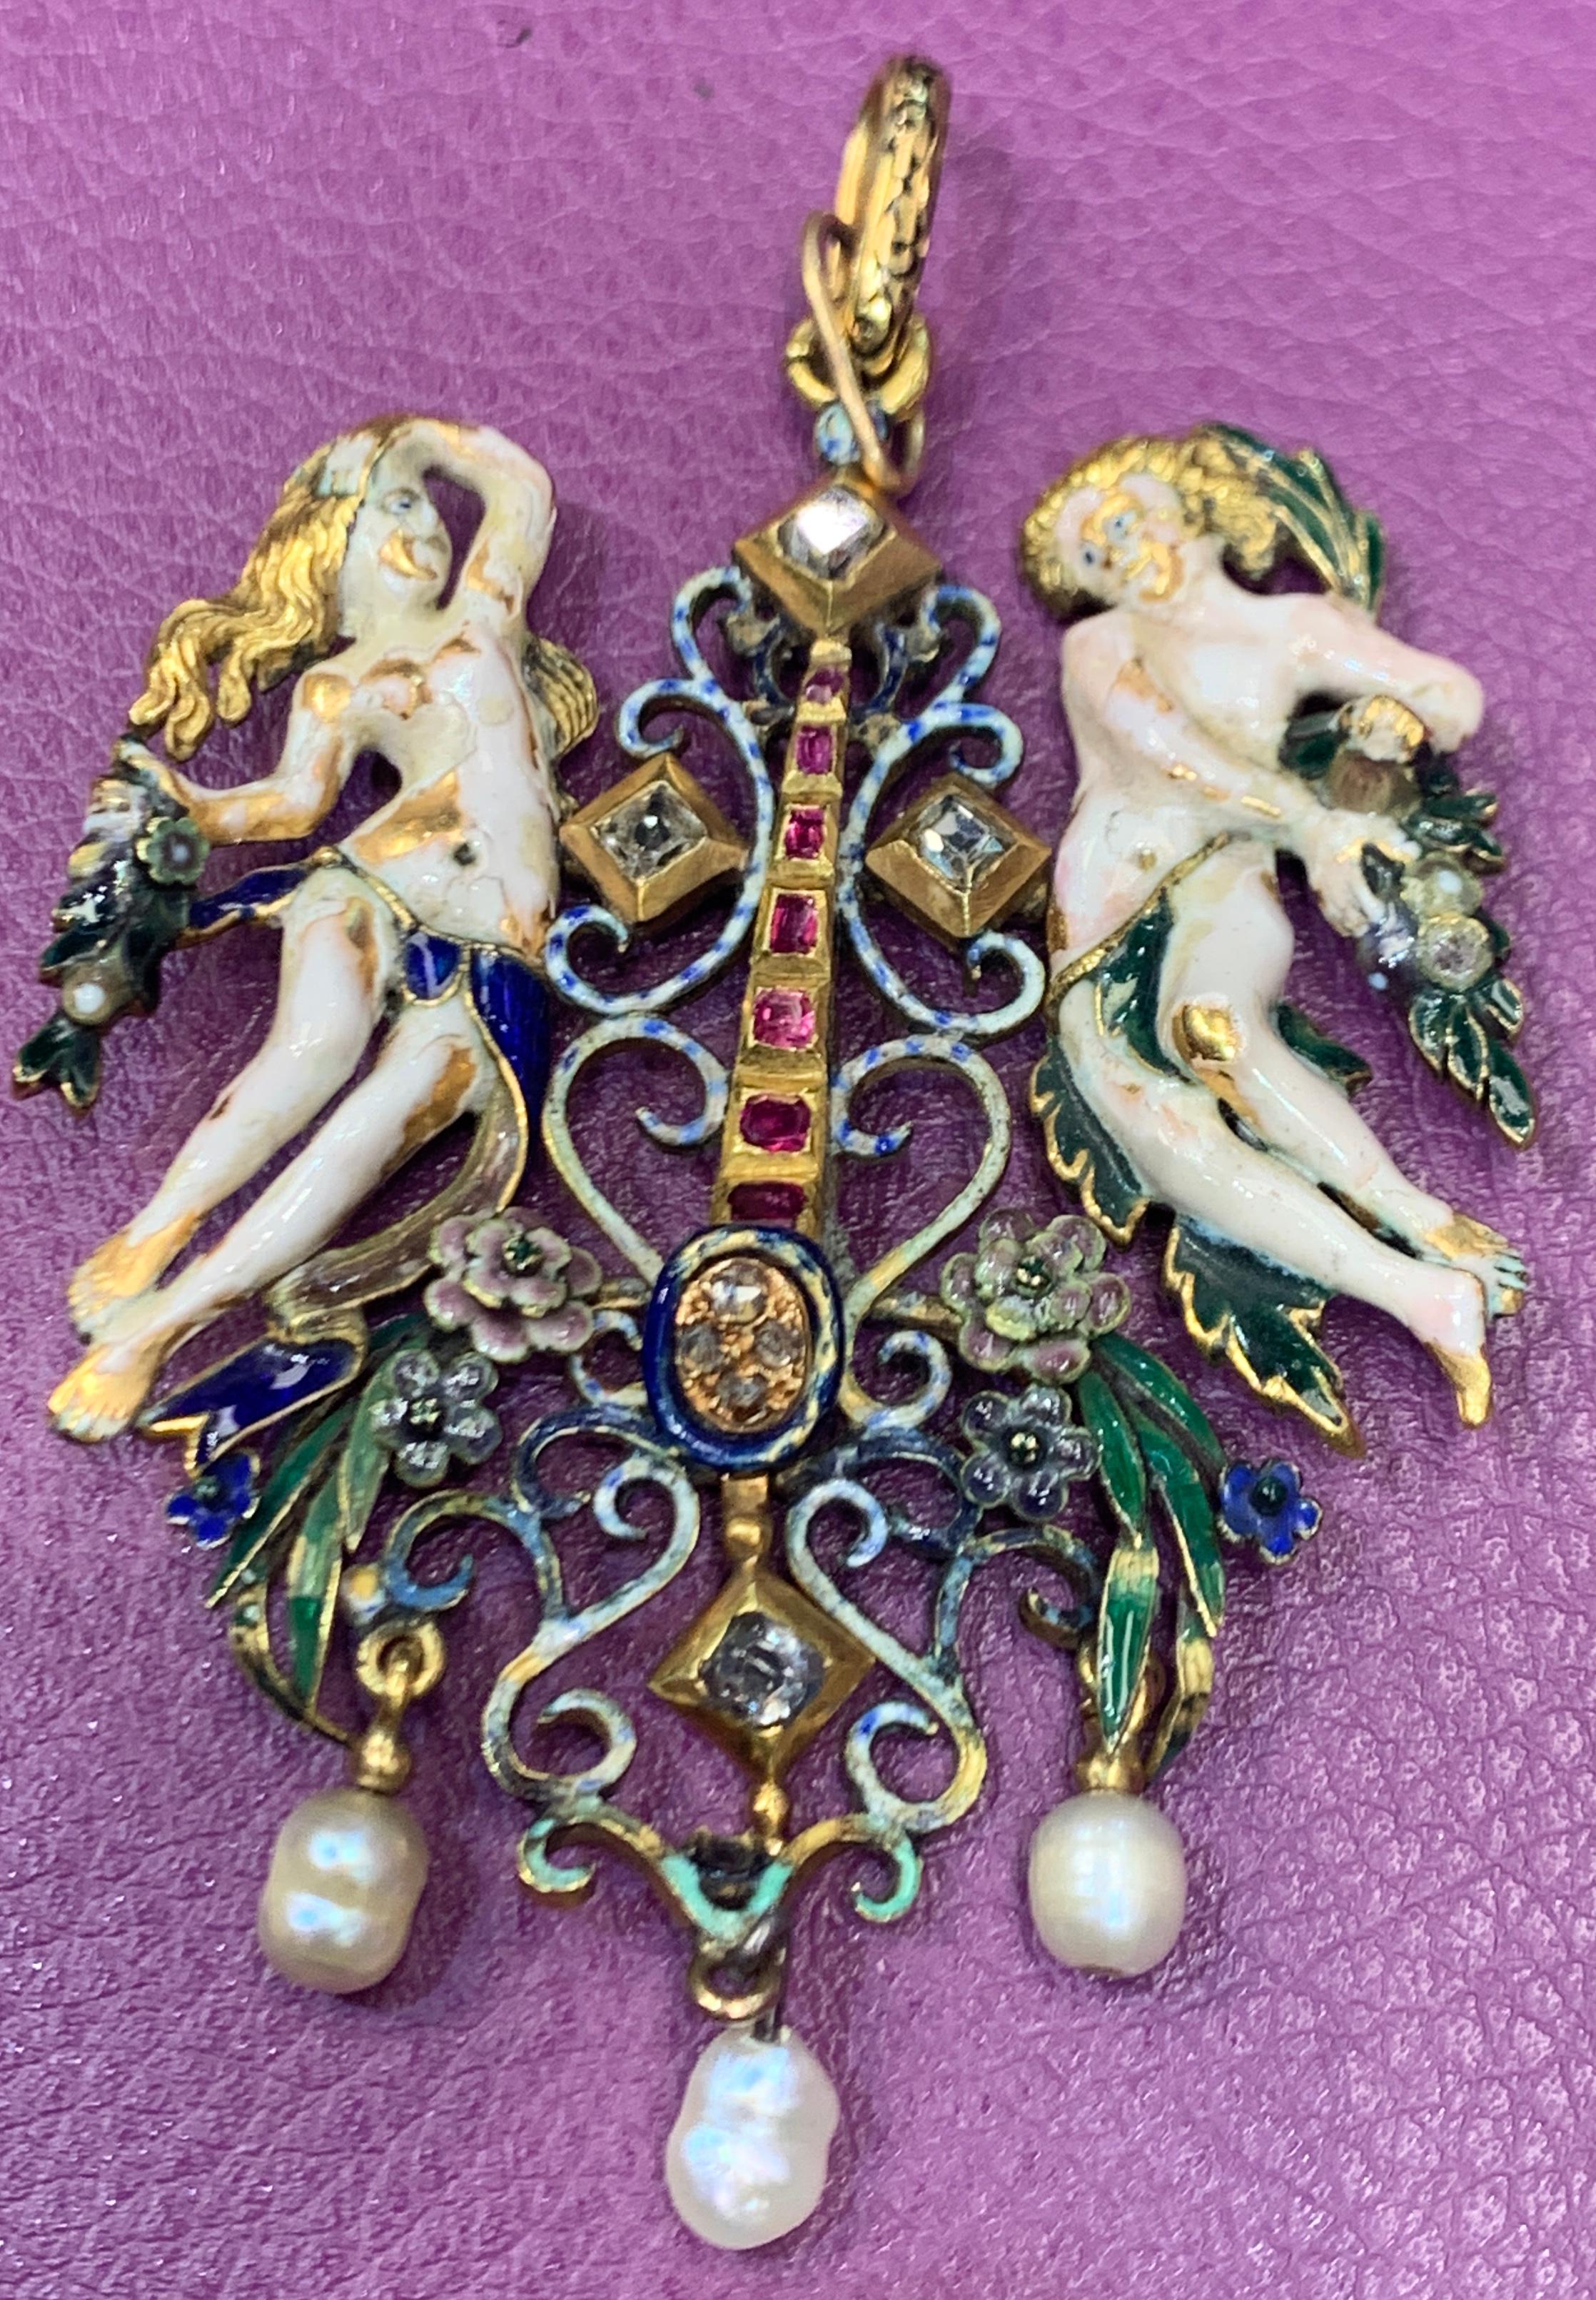 Österreich-Ungarische Renaissance-Revival-Adam-und-Eva-Brosche
Hergestellt um 1900
3 Perlen
8 Diamanten
7 Rubine
Abmessungen: 3